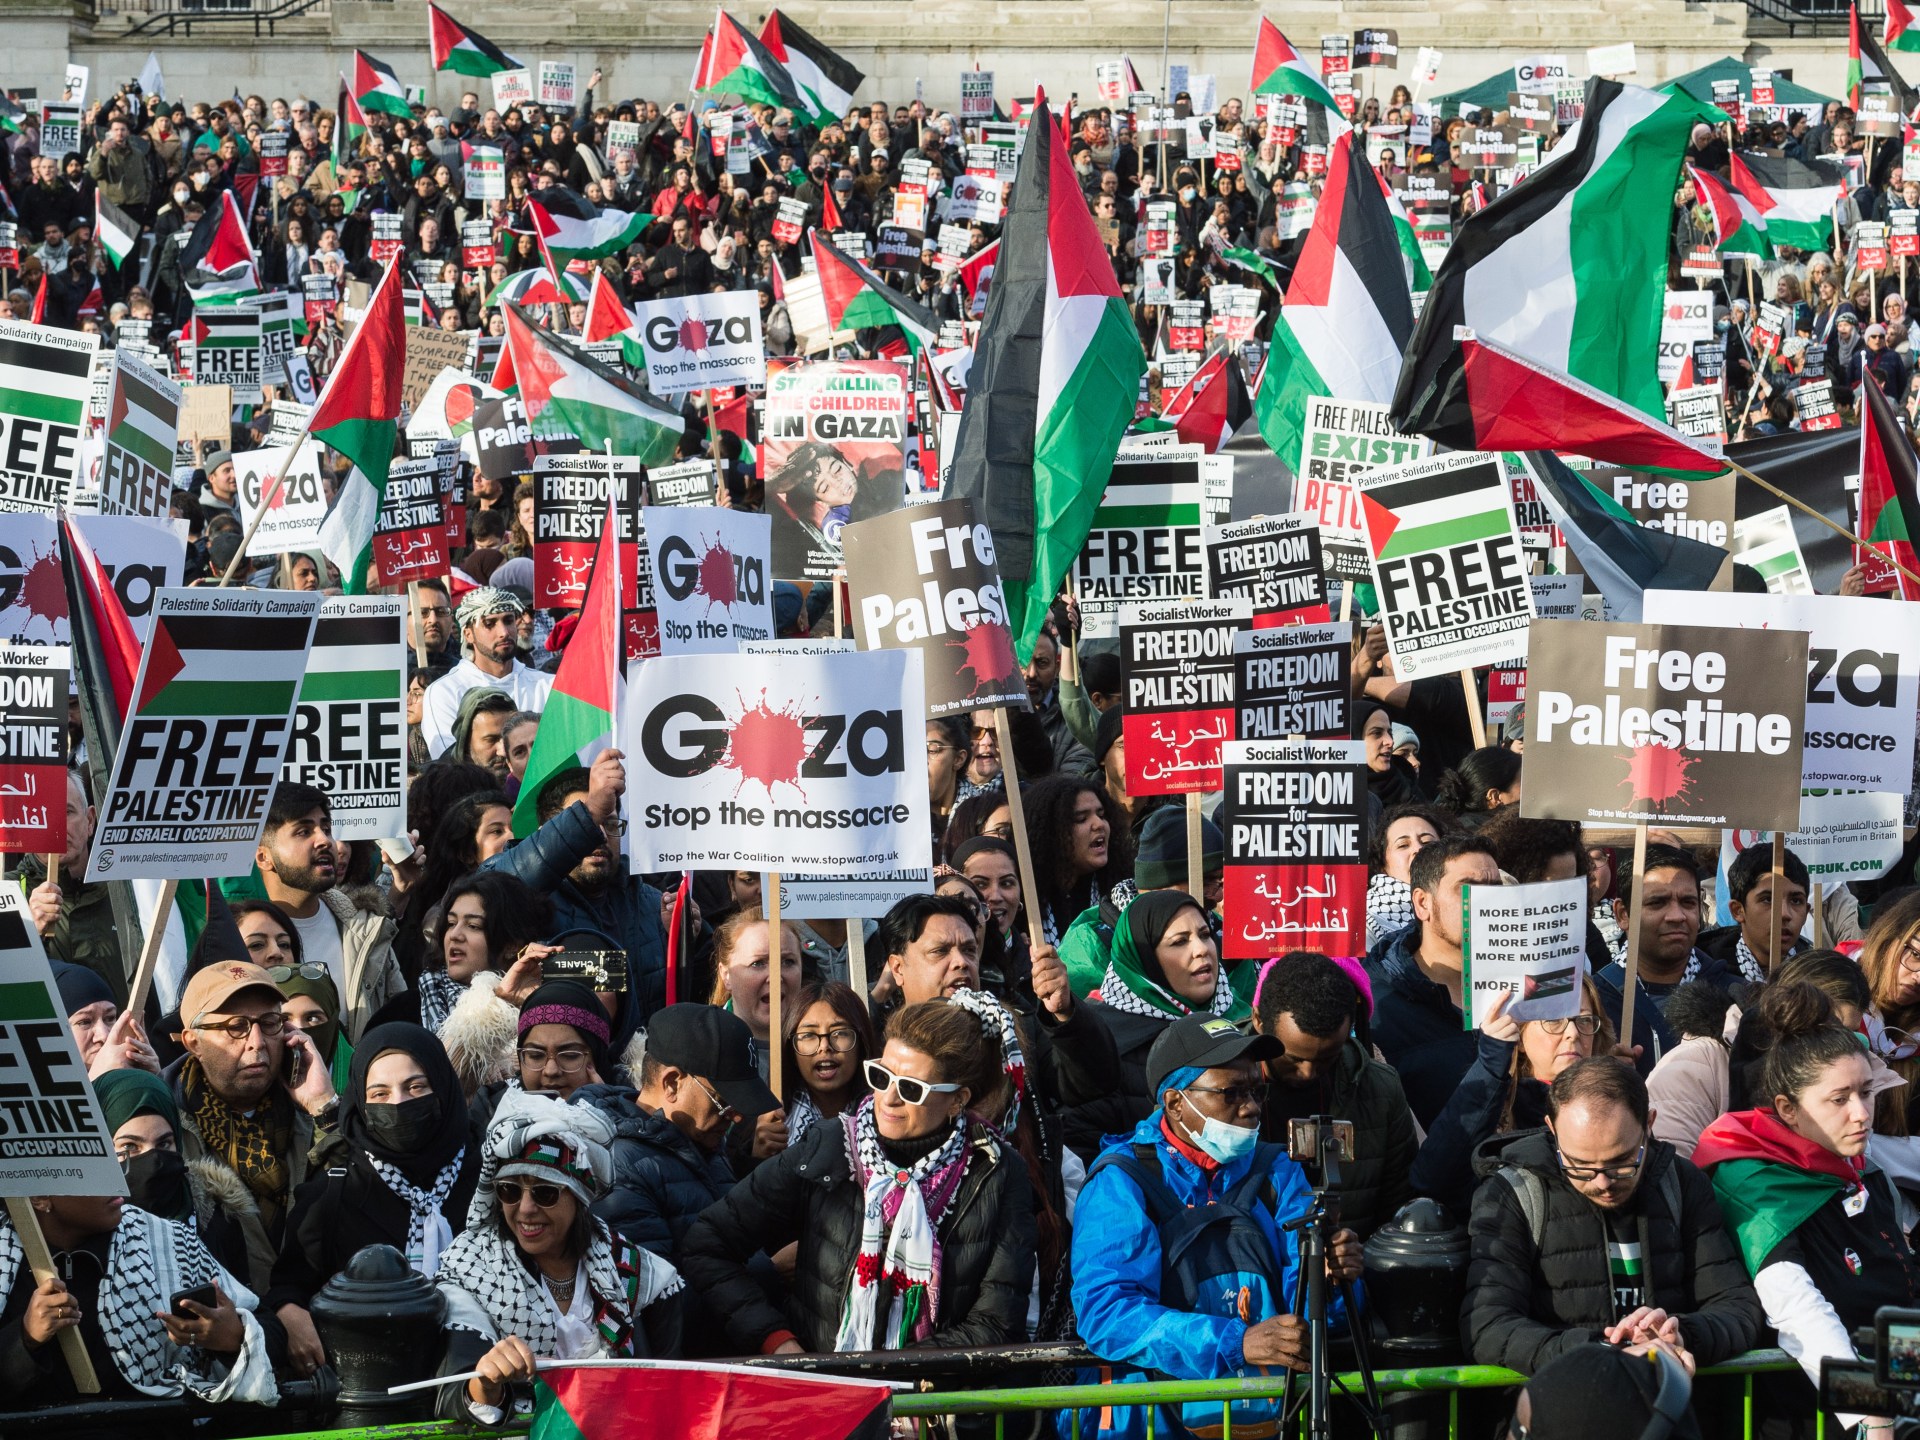 مسيرة حاشدة متوقعة اليوم بلندن من أجل فلسطين والشرطة تتأهب | أخبار – البوكس نيوز